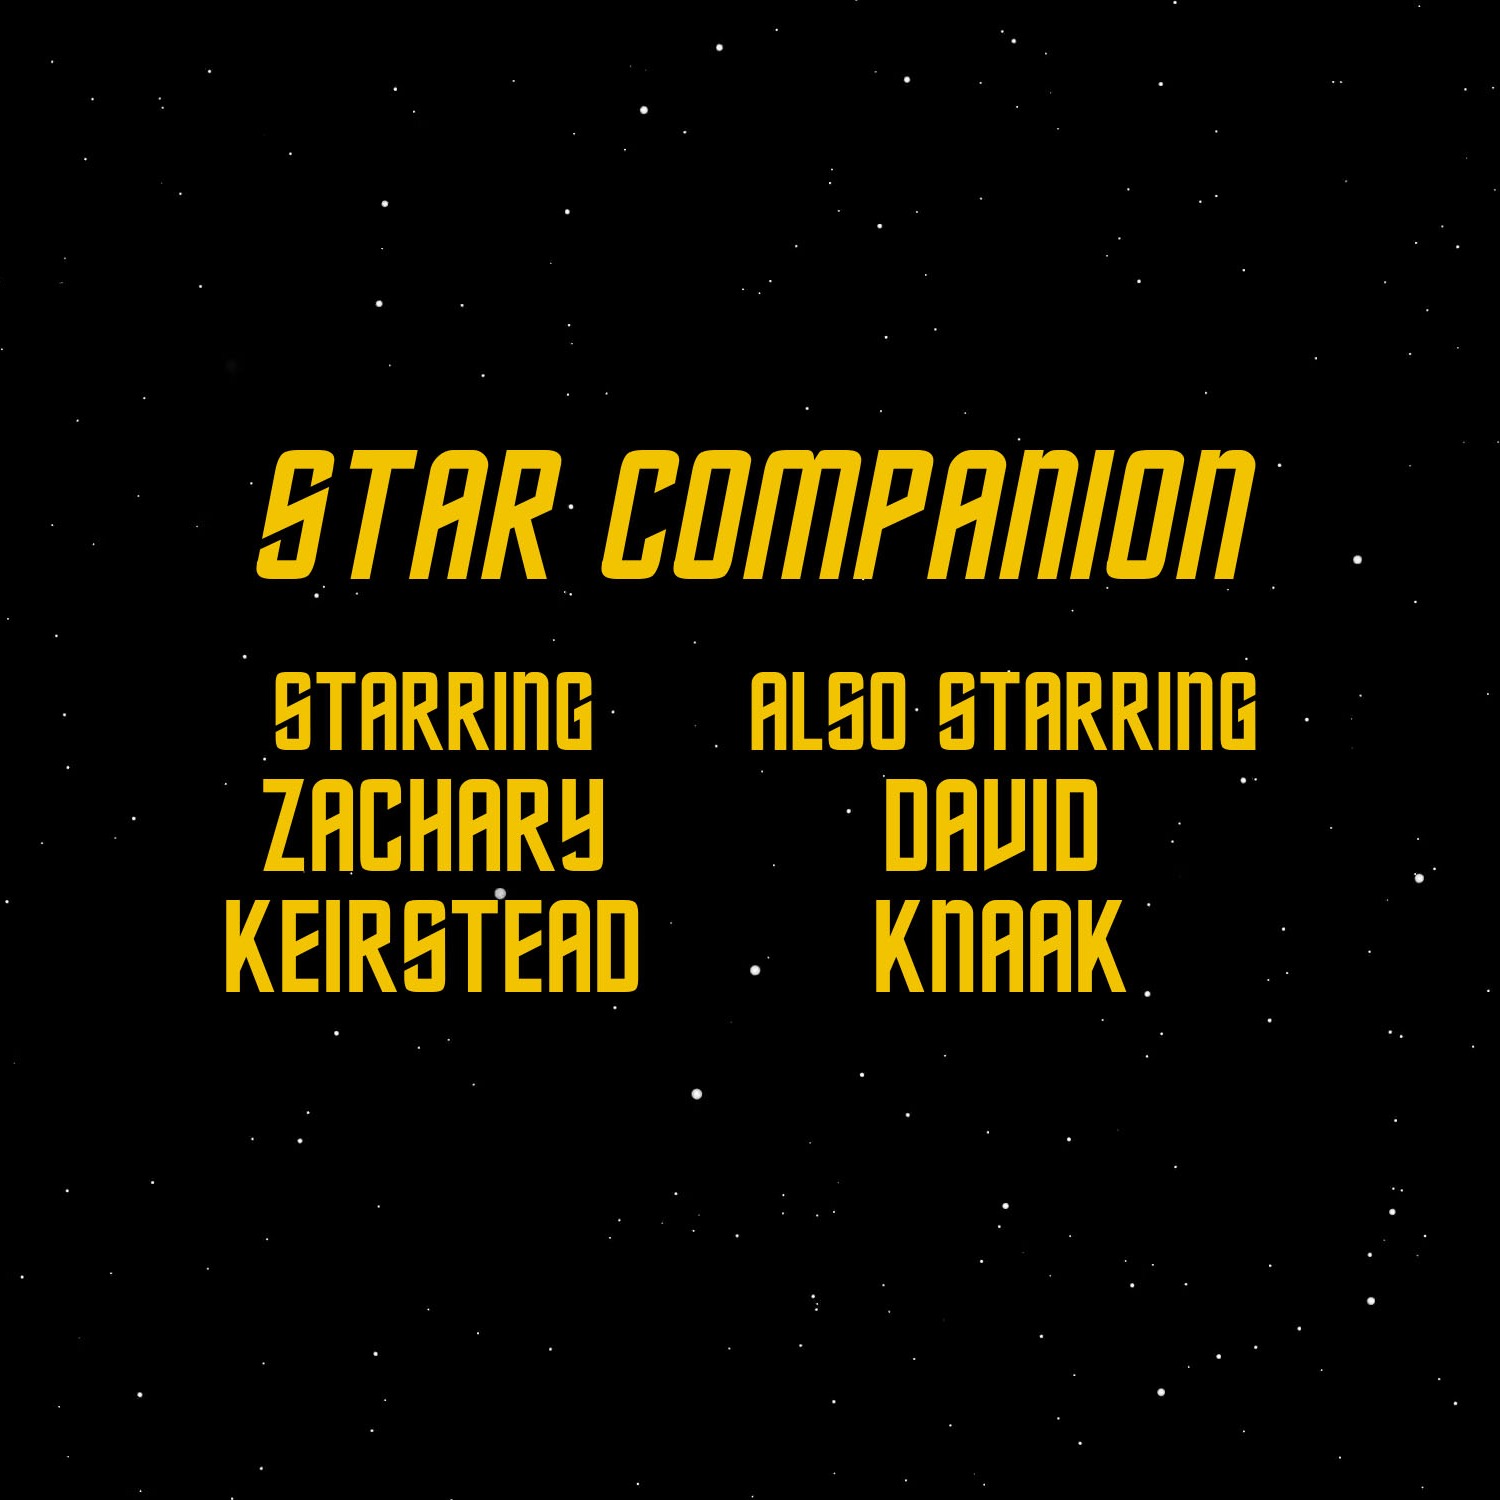 cover art for Star Trek Enterprise: S2 Episode 25 "Bounty"